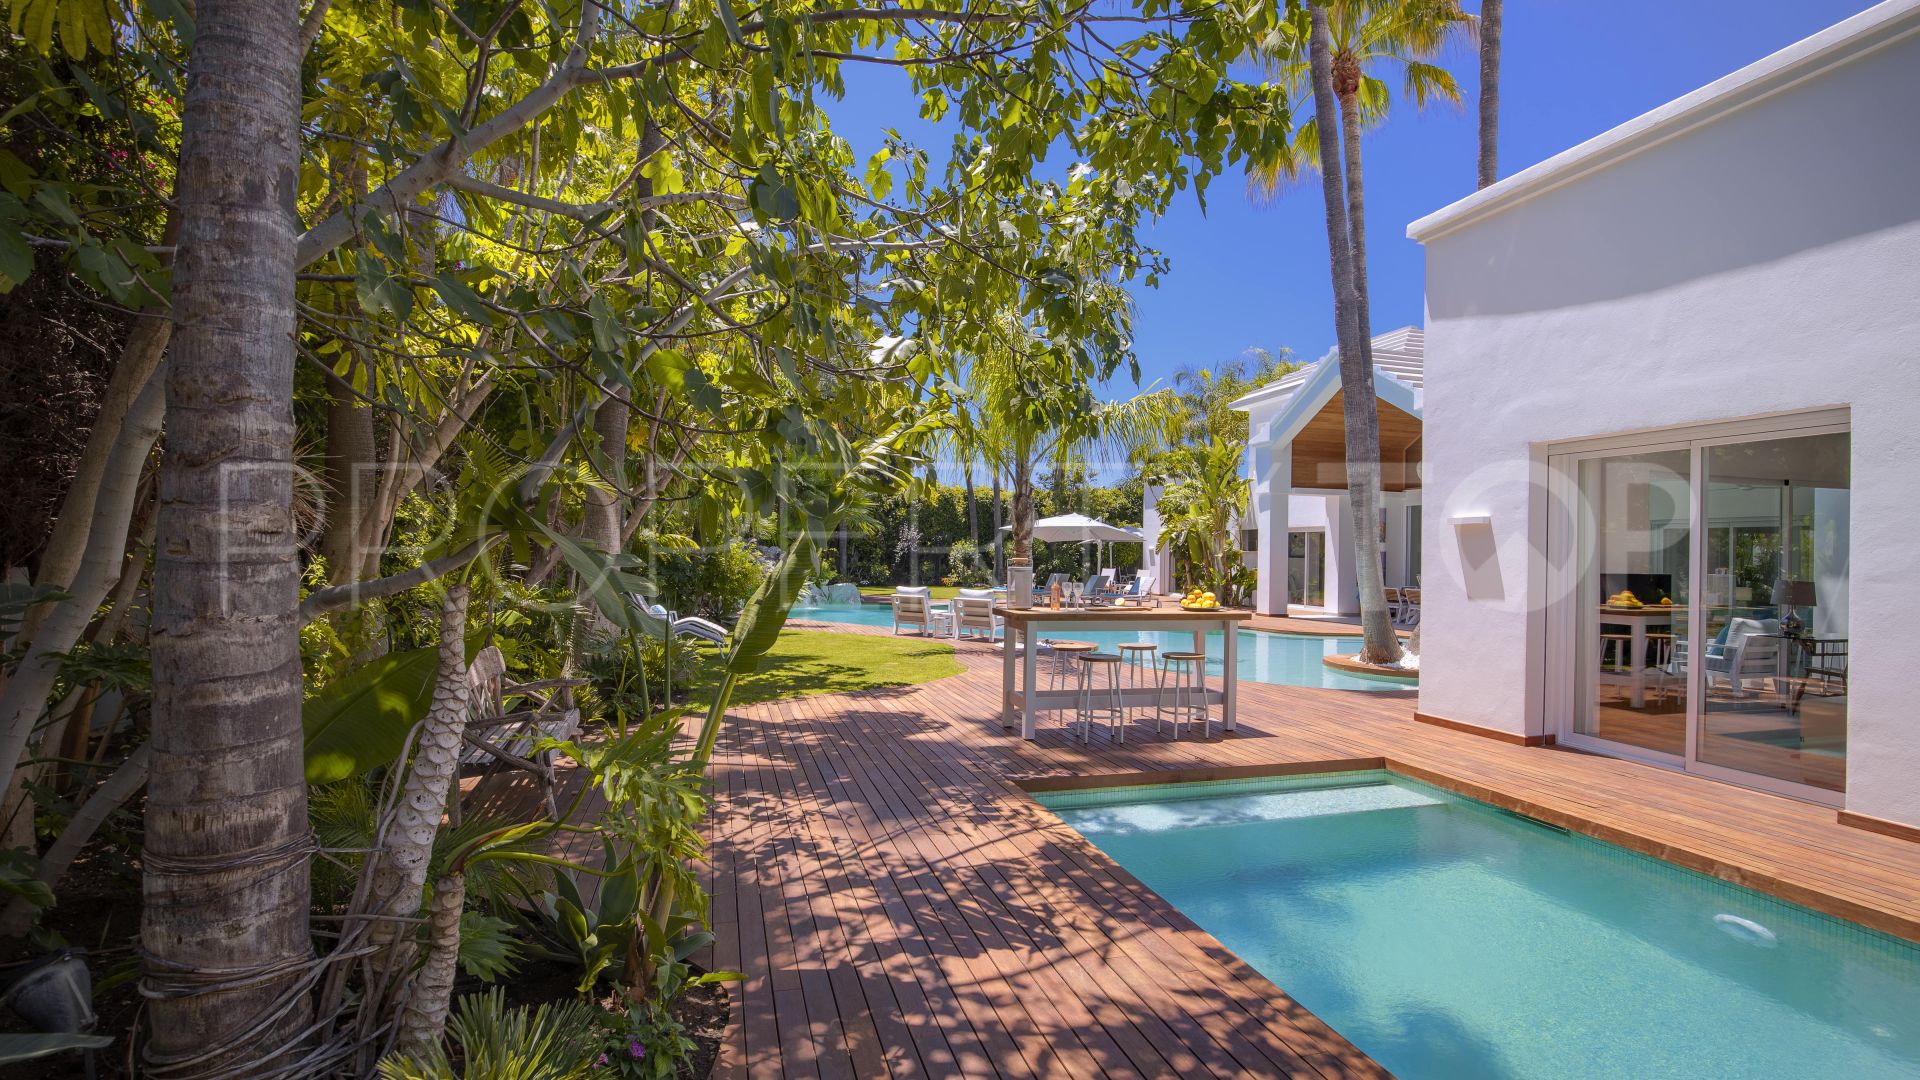 6 bedrooms villa for sale in Guadalmina Baja